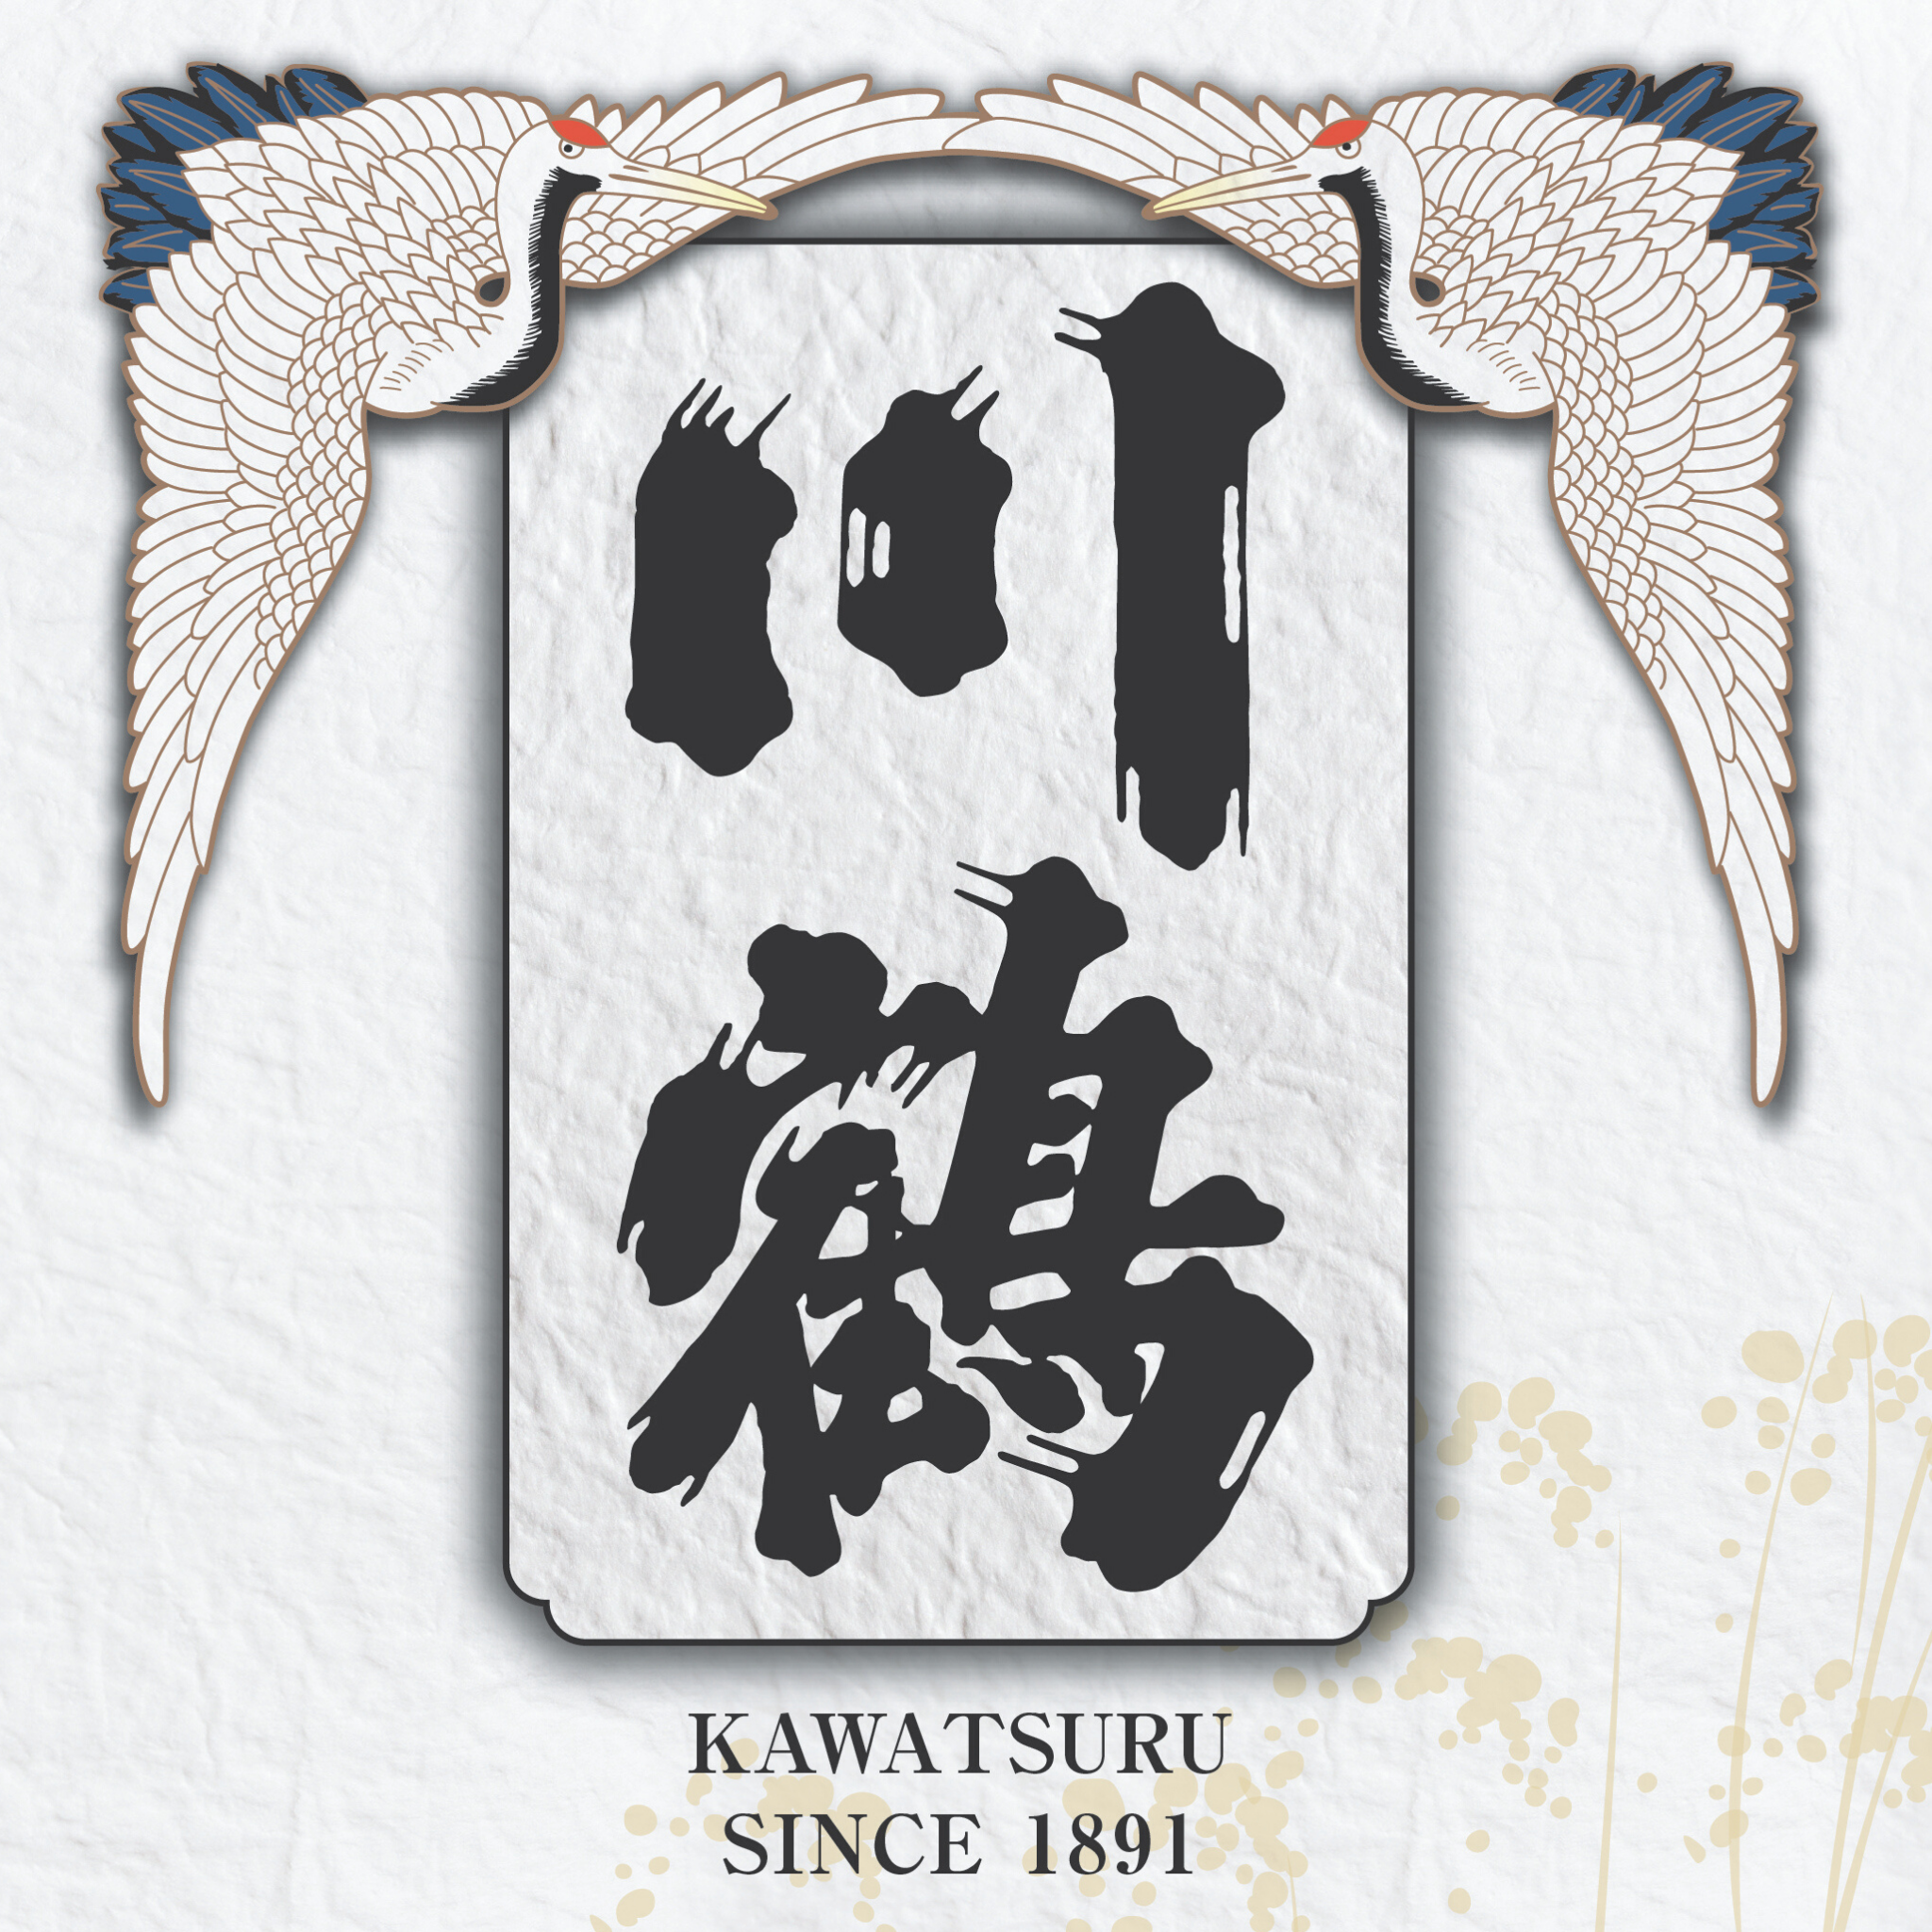 Kawatsuru